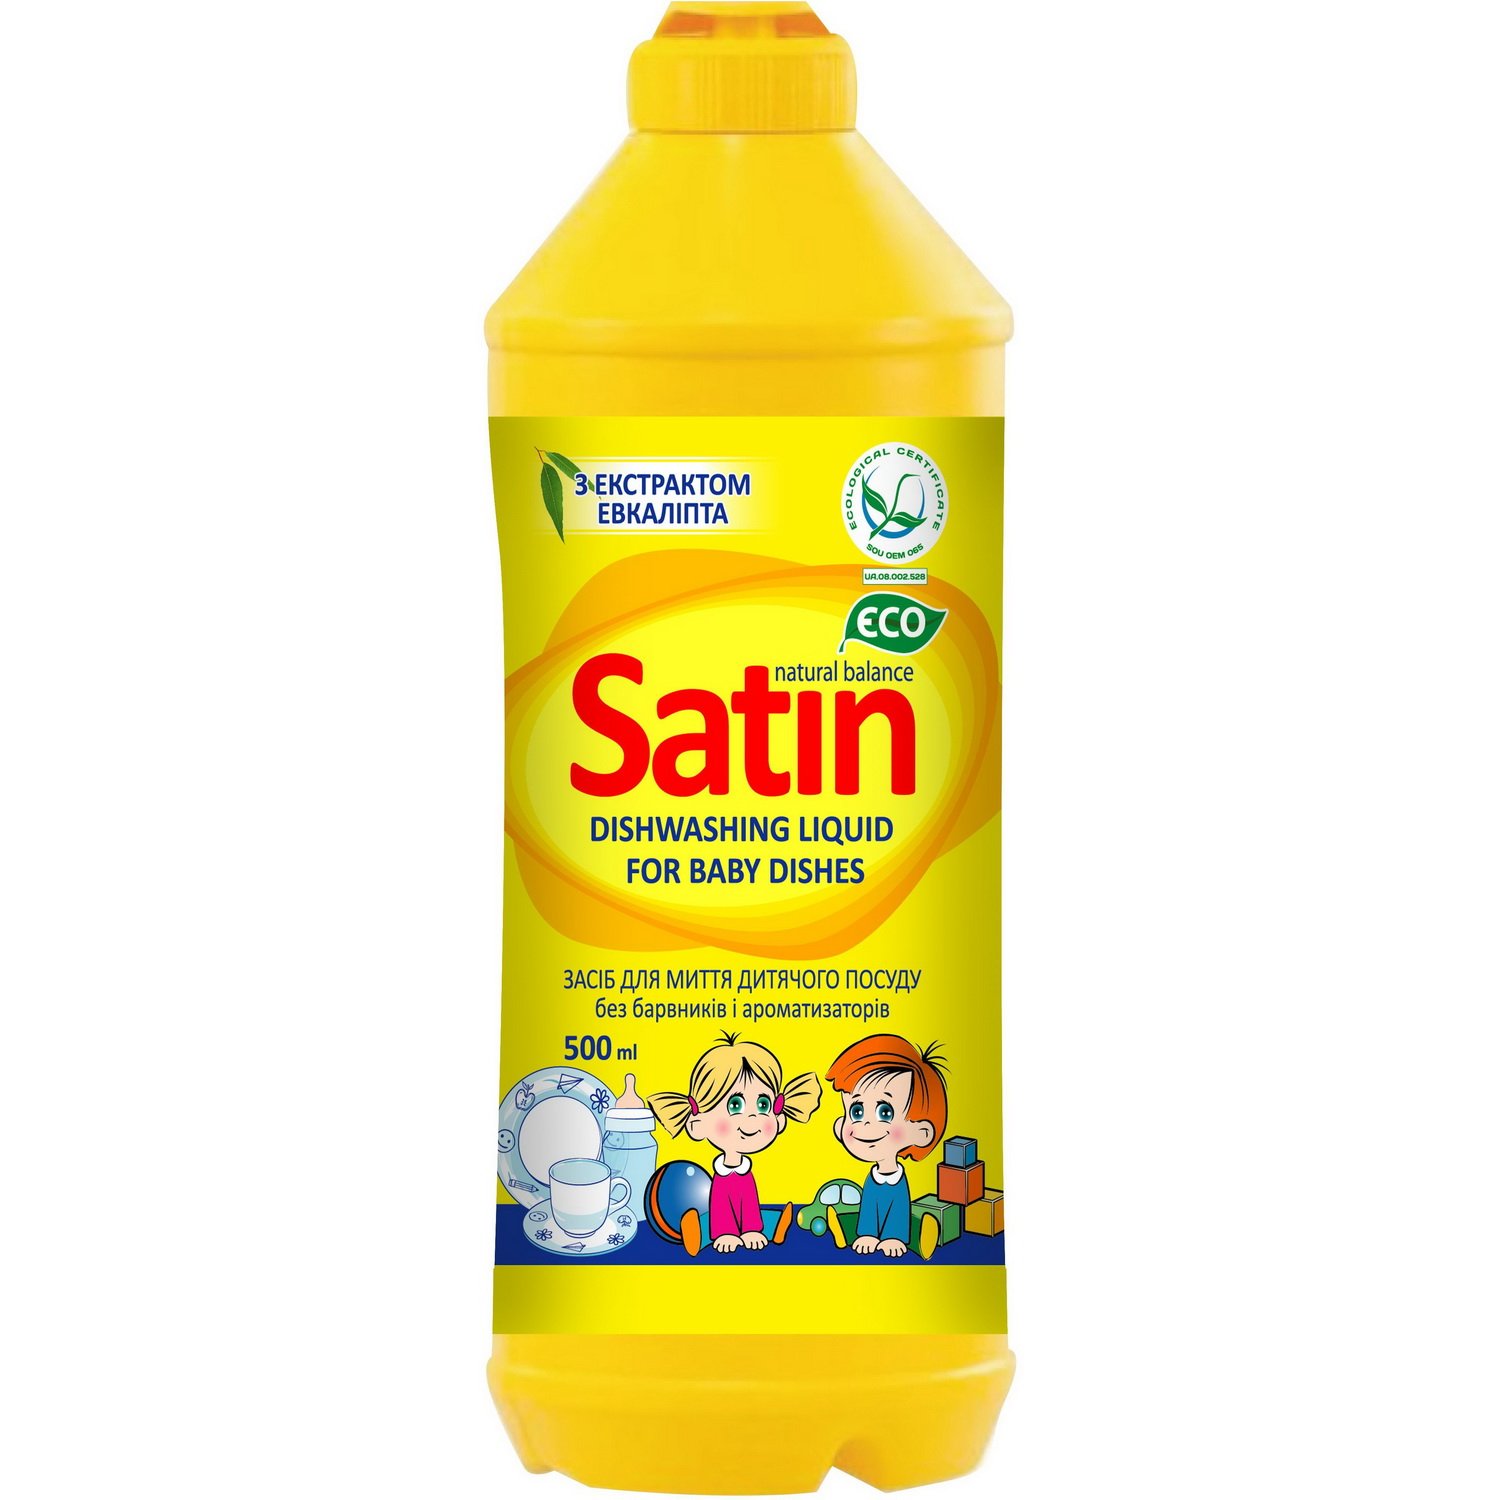 Засіб для миття дитячого посуду Satin Natural Balance, з екстрактом евкаліпту, 500 мл - фото 1